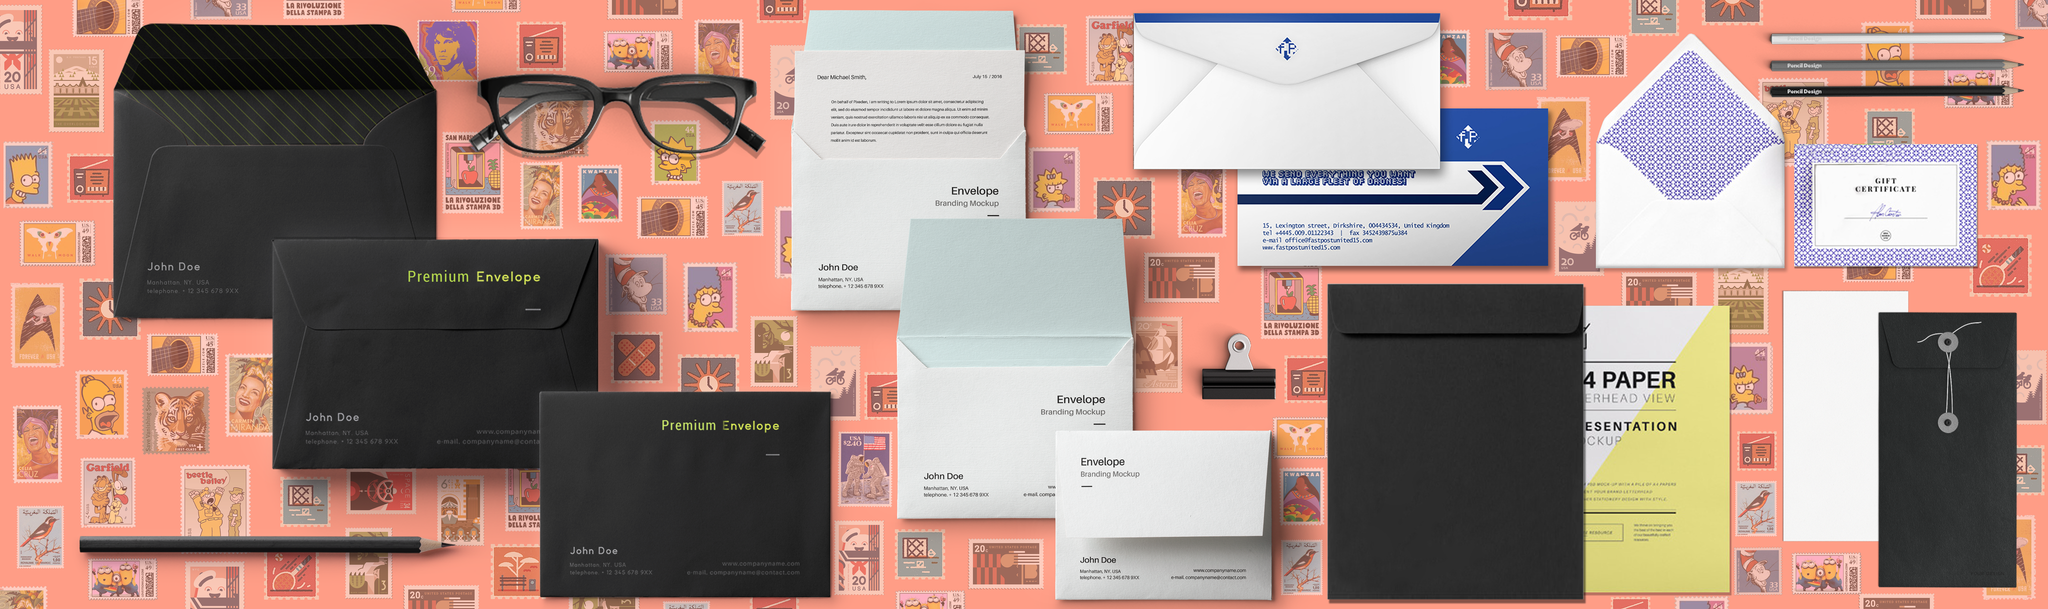 custom_printed_envelopes_miami_florida